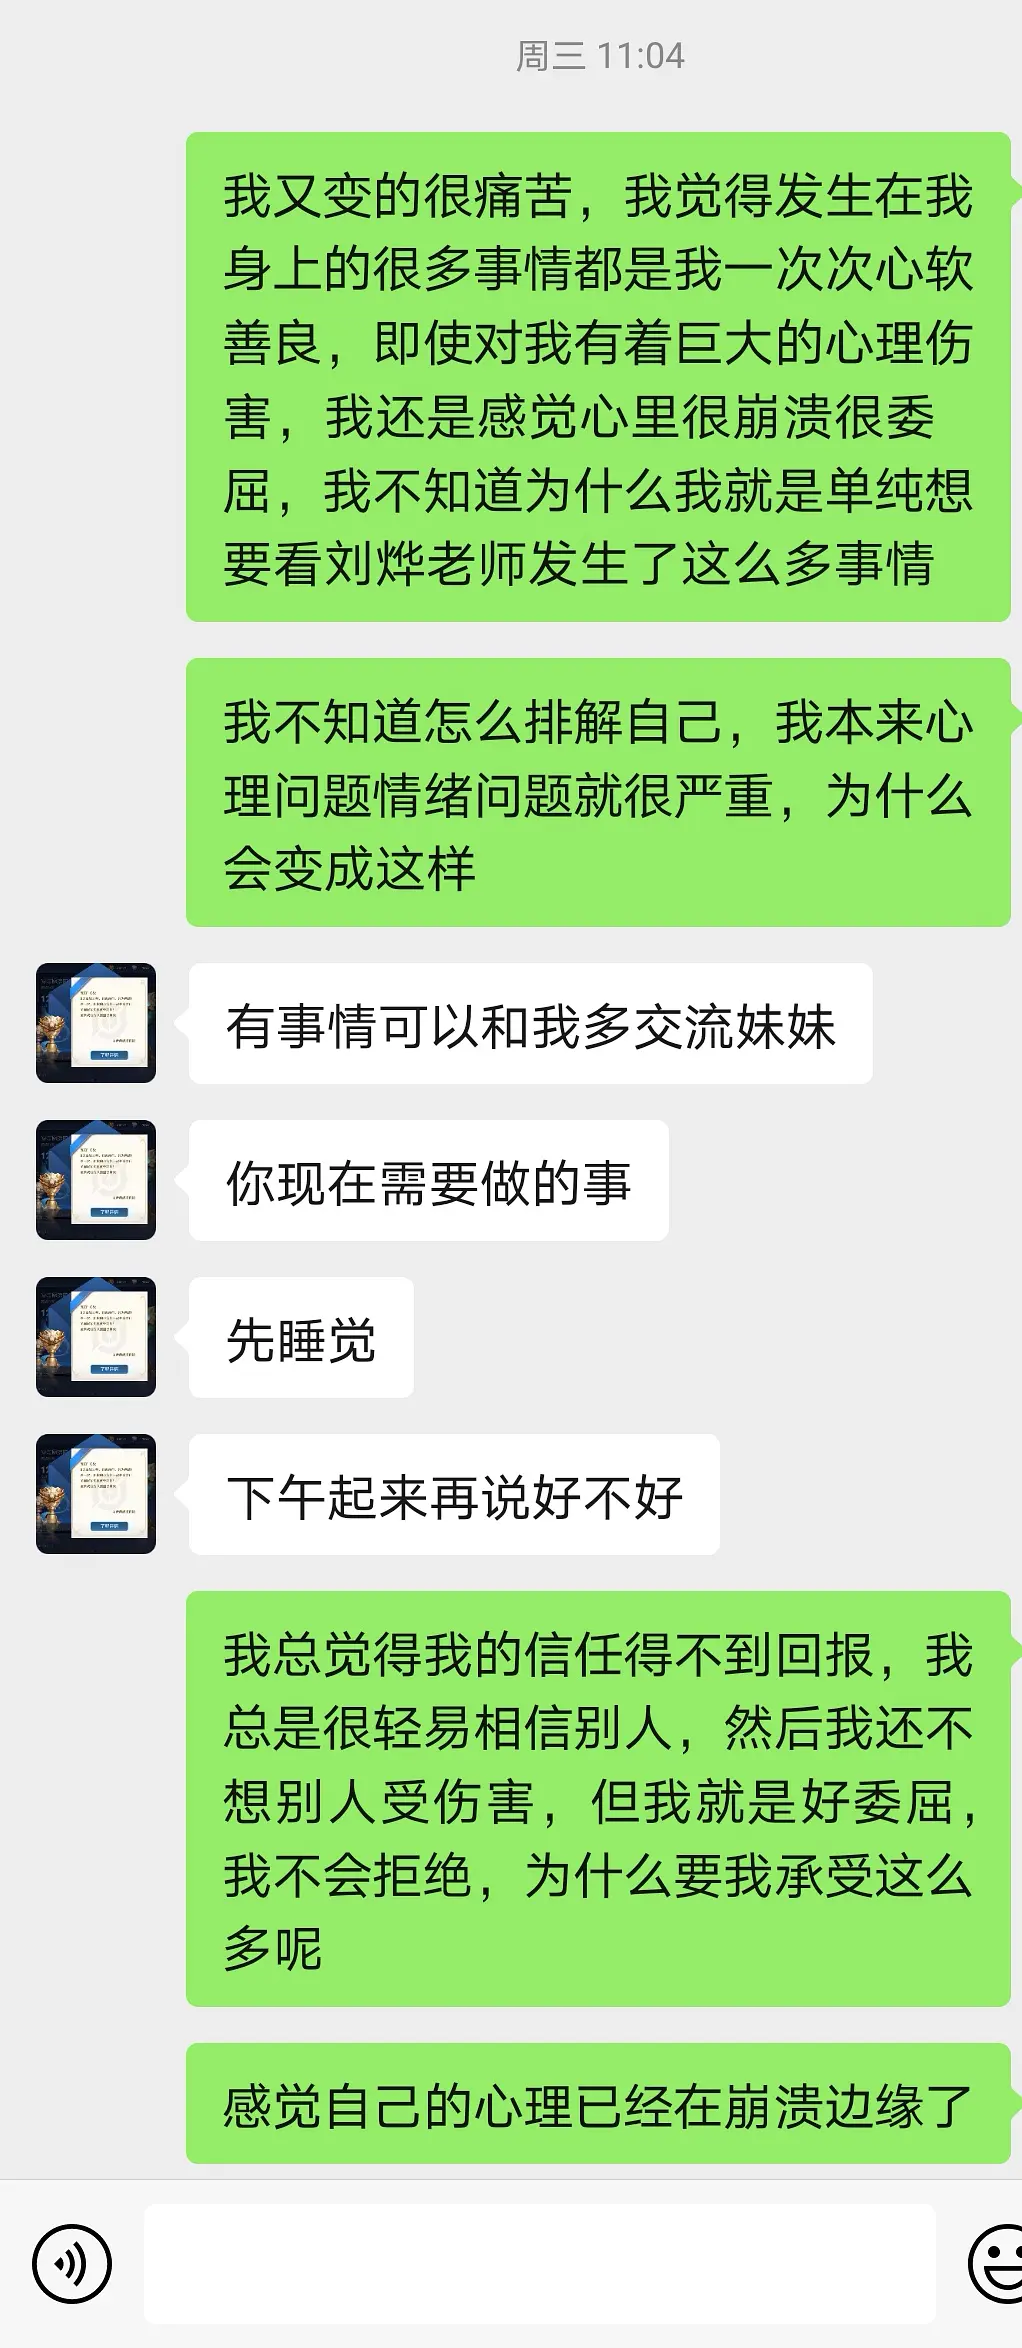 刘烨助理被曝性骚扰，女粉丝发长文控诉，目前已报警调查取证